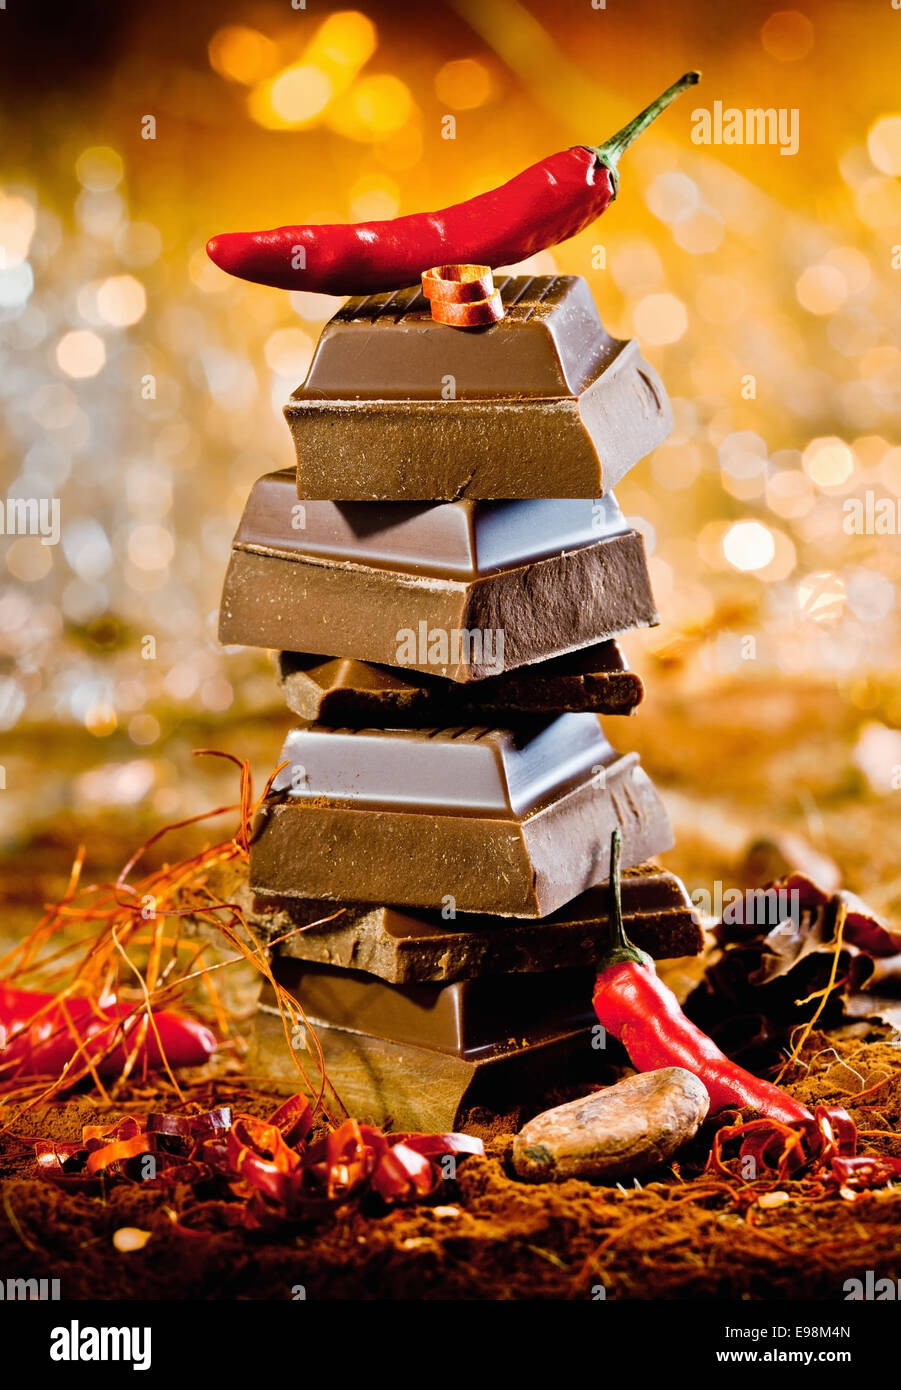 Konzeptbild für rote heiße Schokolade mit einem Turm von Schokolade Würfeln, gekrönt von einer feurigen Chili gegen ein Bokeh von festlichen Lichtern Stockfoto